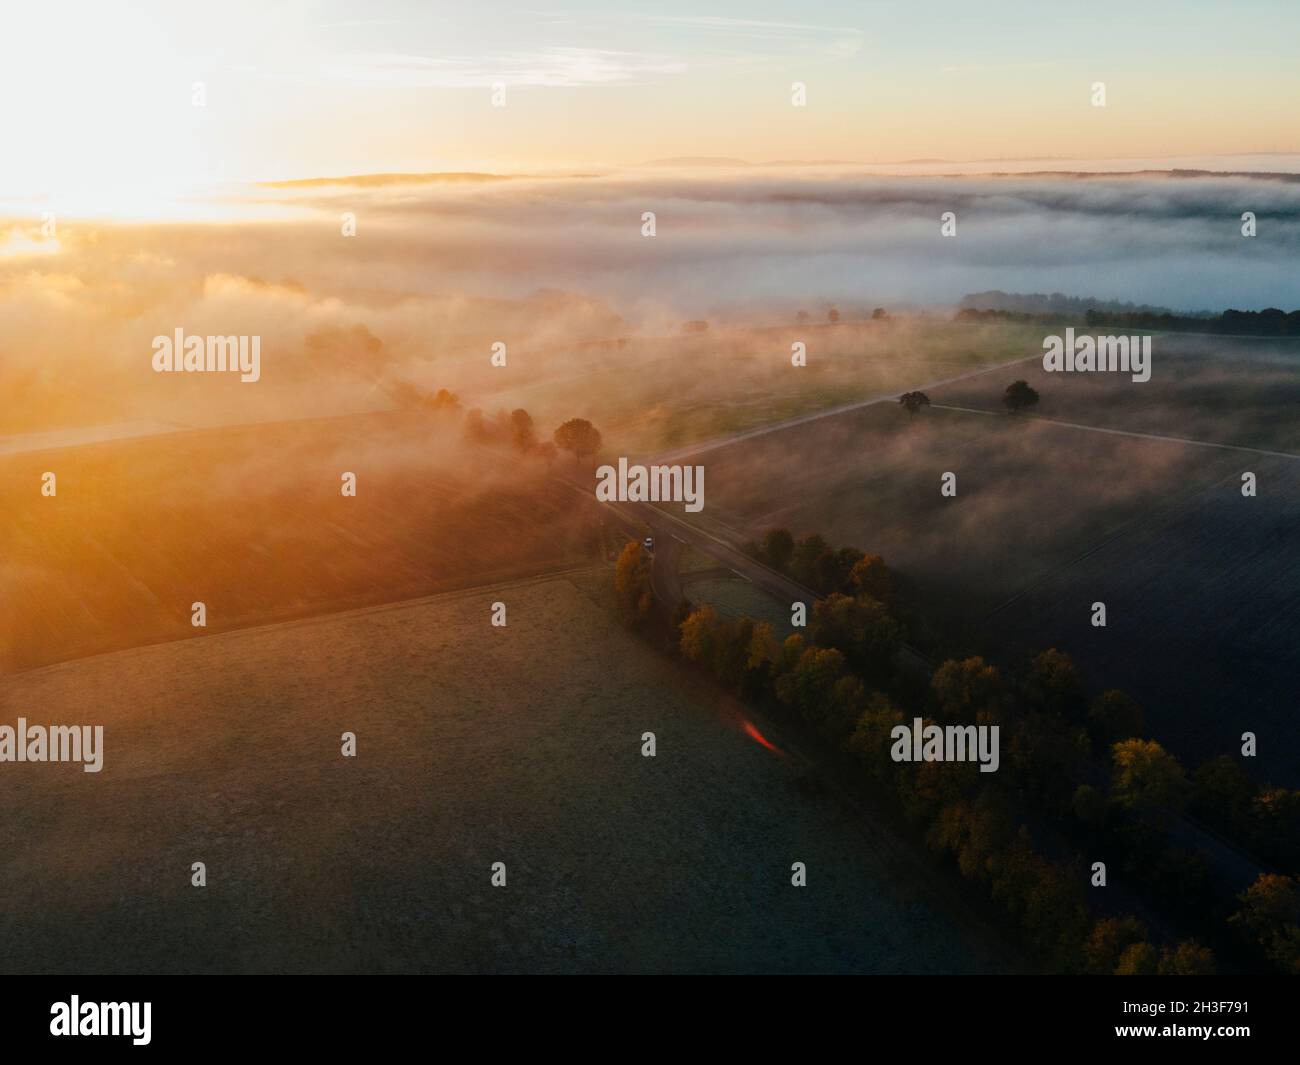 Rheinlandpfalz, 24.10.21: Sonnenaufgang und nebelige Landschaft am frühen Morgen.  Foto: pressefoto Mika Volkmann Stock Photo